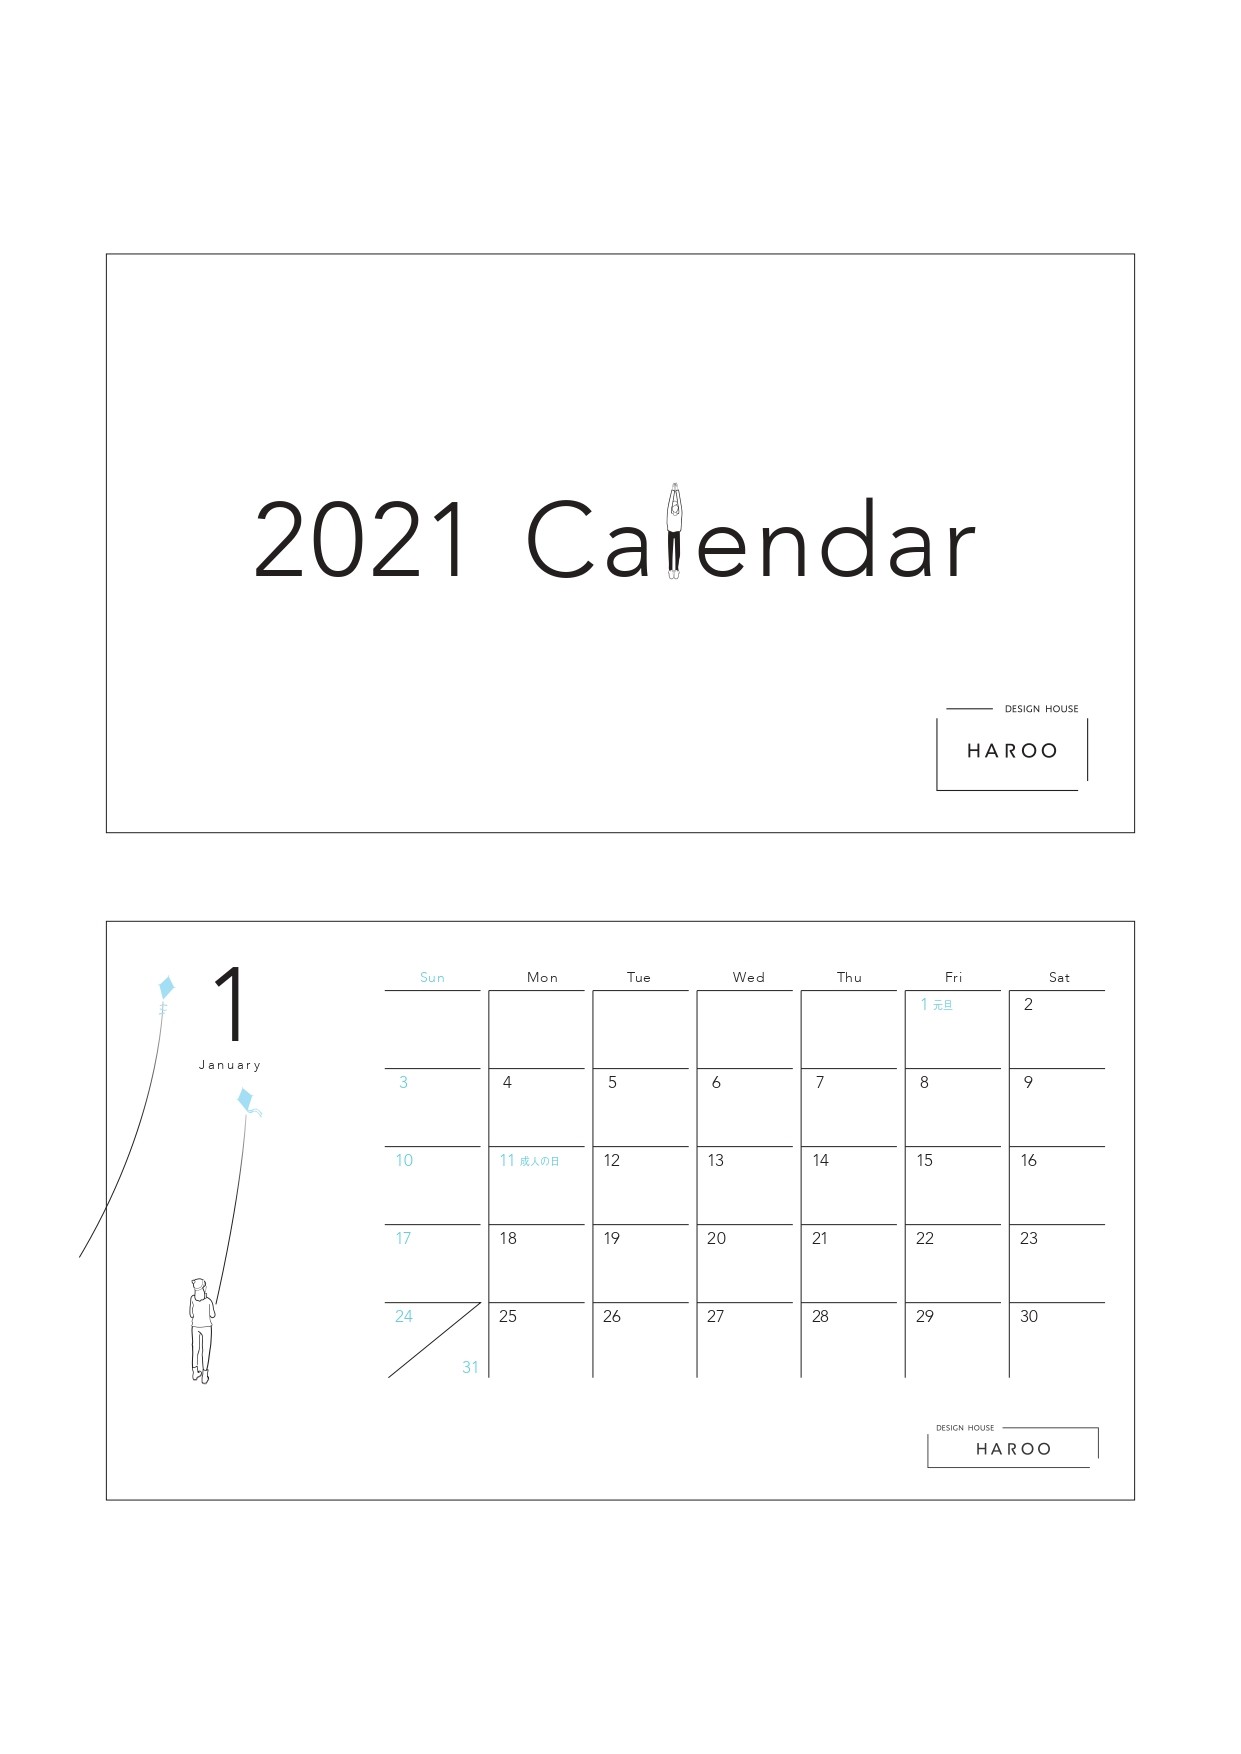 カレンダーの制作